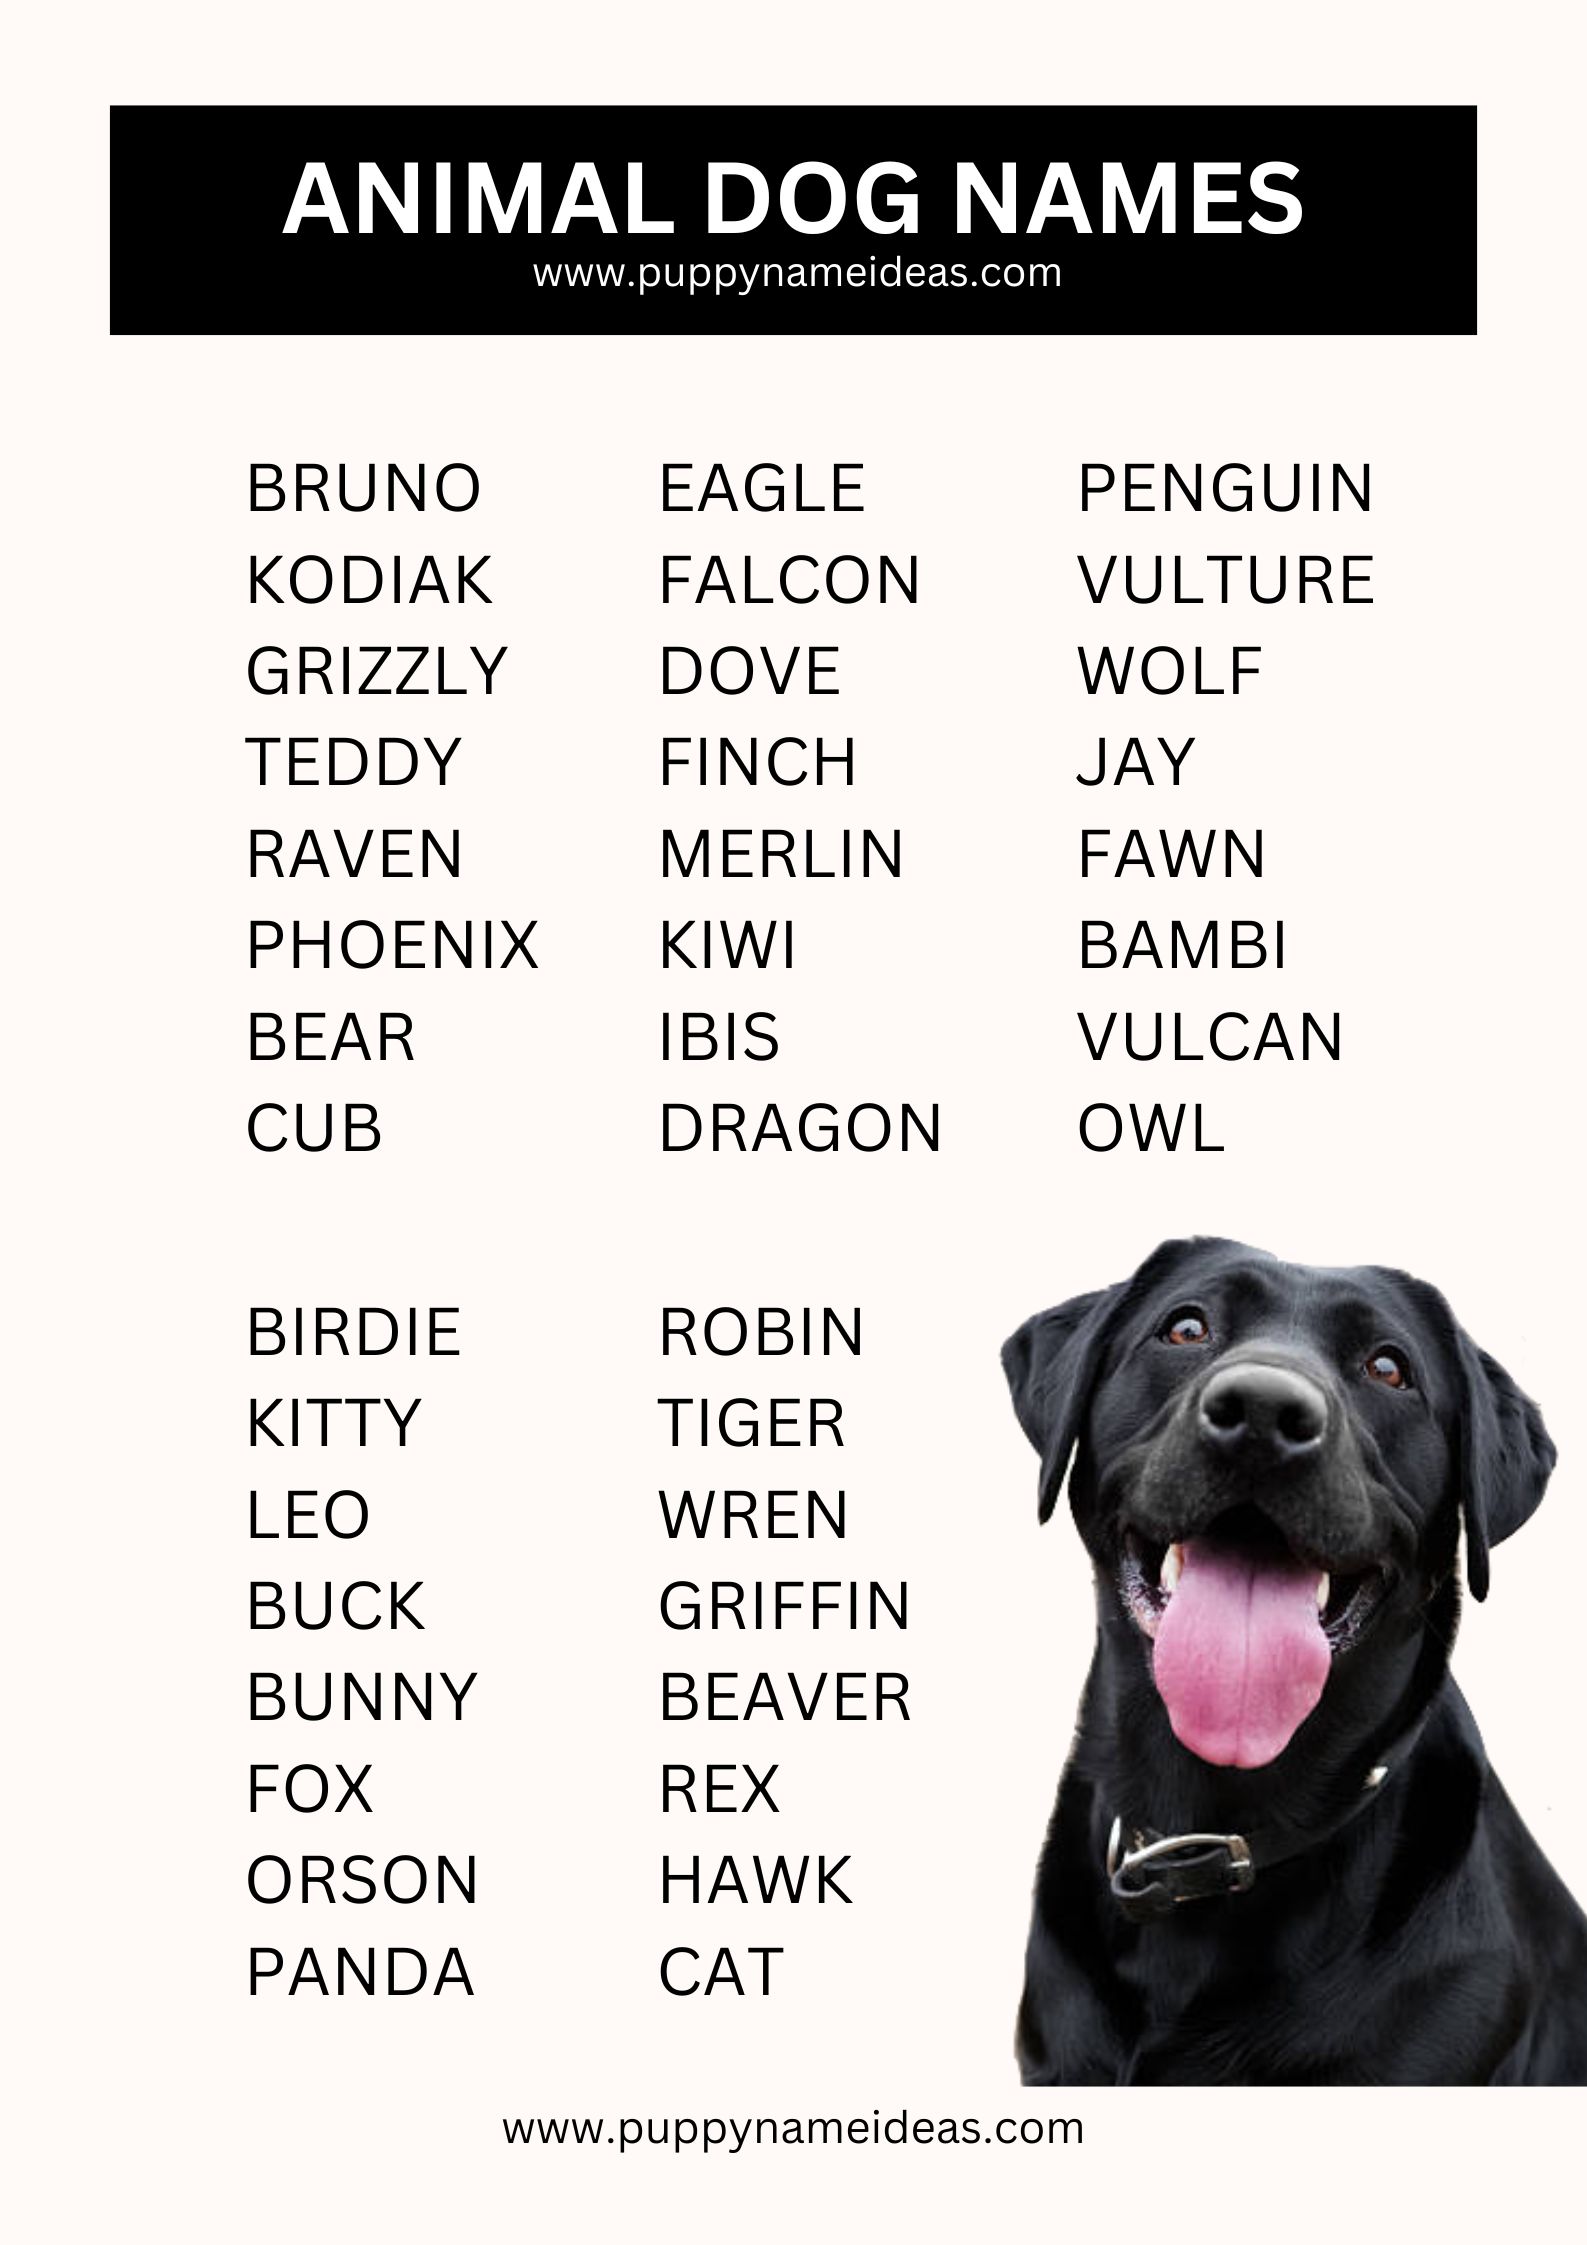 list of animal dog names